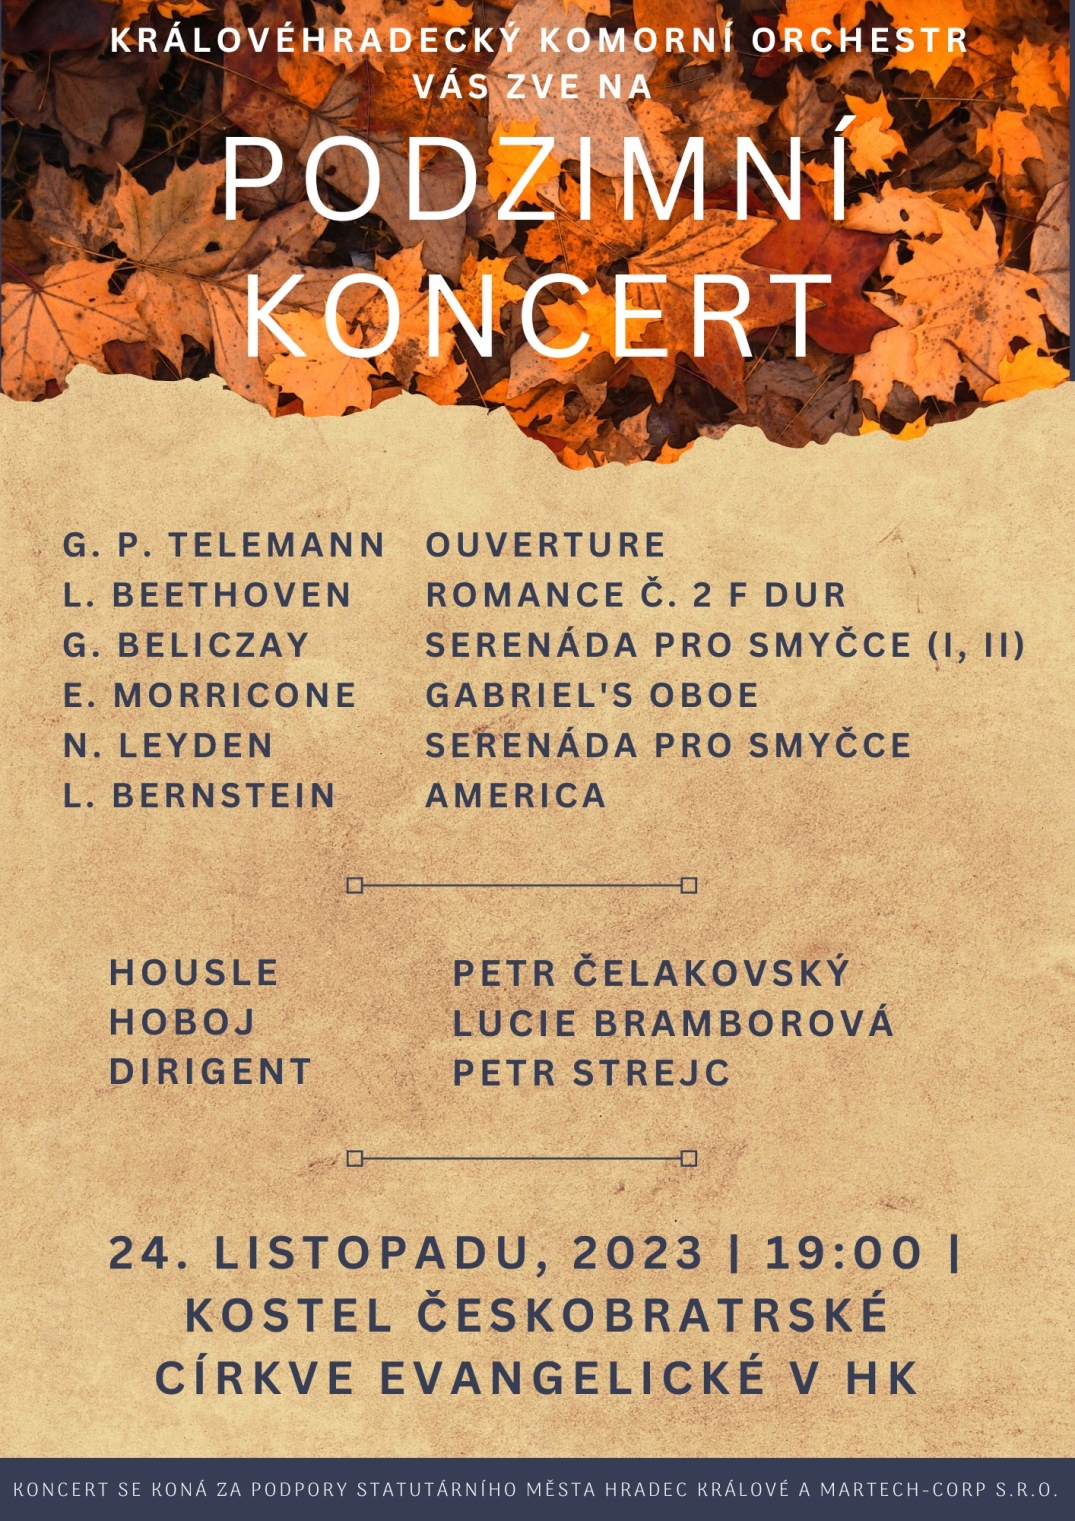 Podzimní koncert Královéhradeckého komorního orchestru